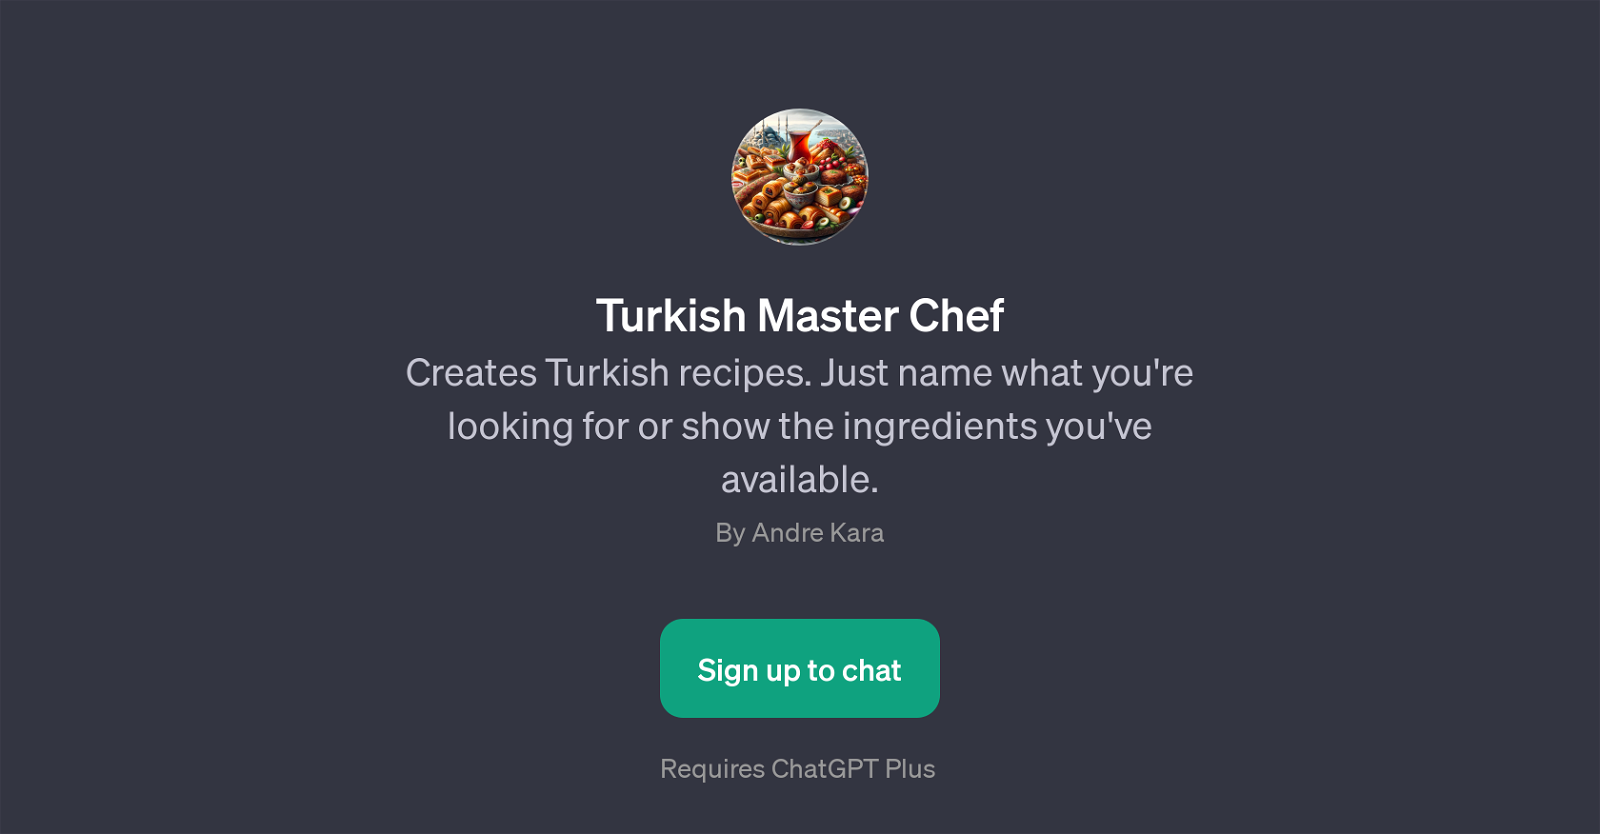 Turkish Master Chef website